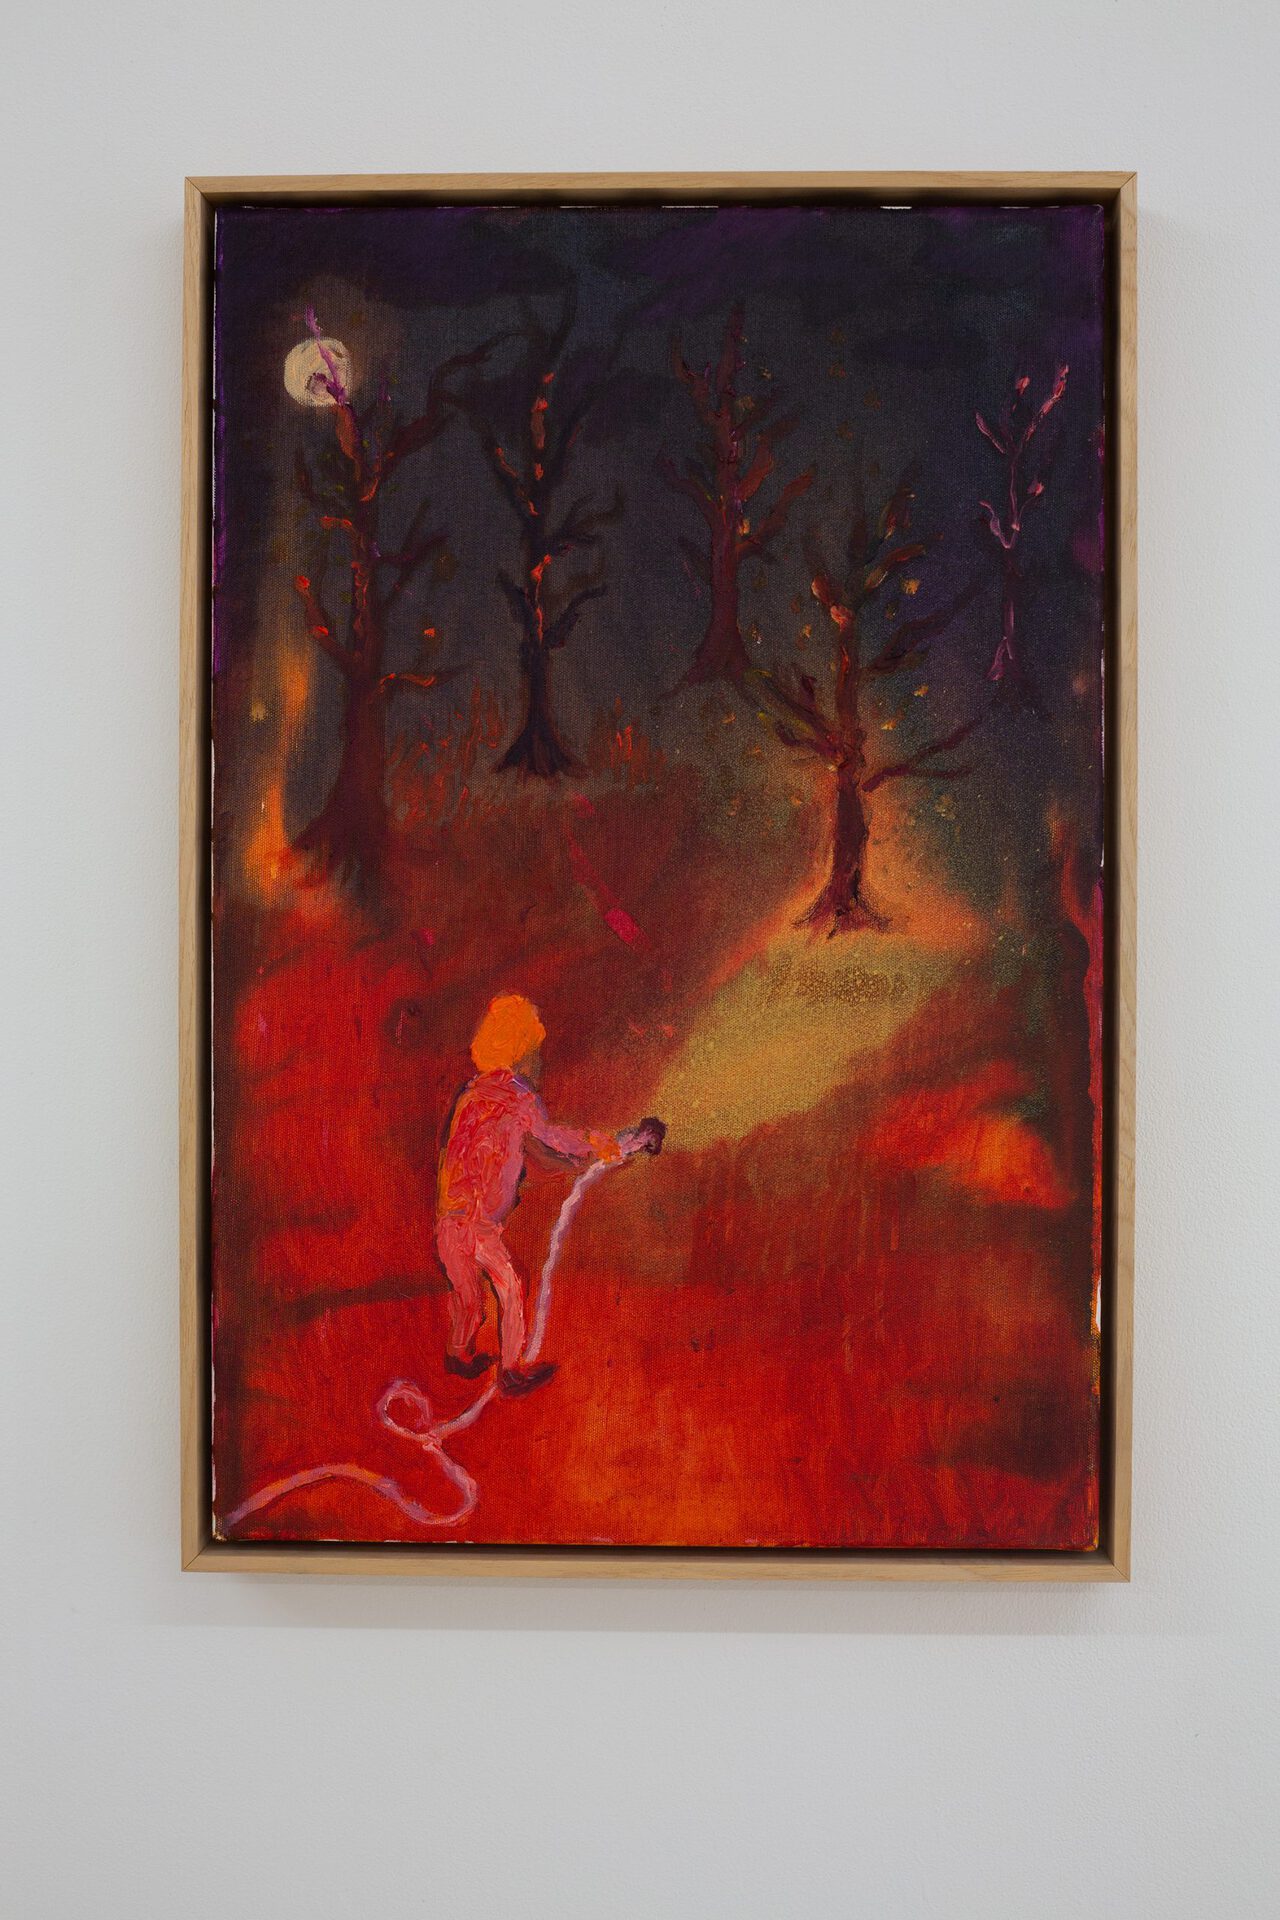 Kaspars Groševs, Burning Forest, 2022. Acrylic and oil on canvas, 40 x 60 cm